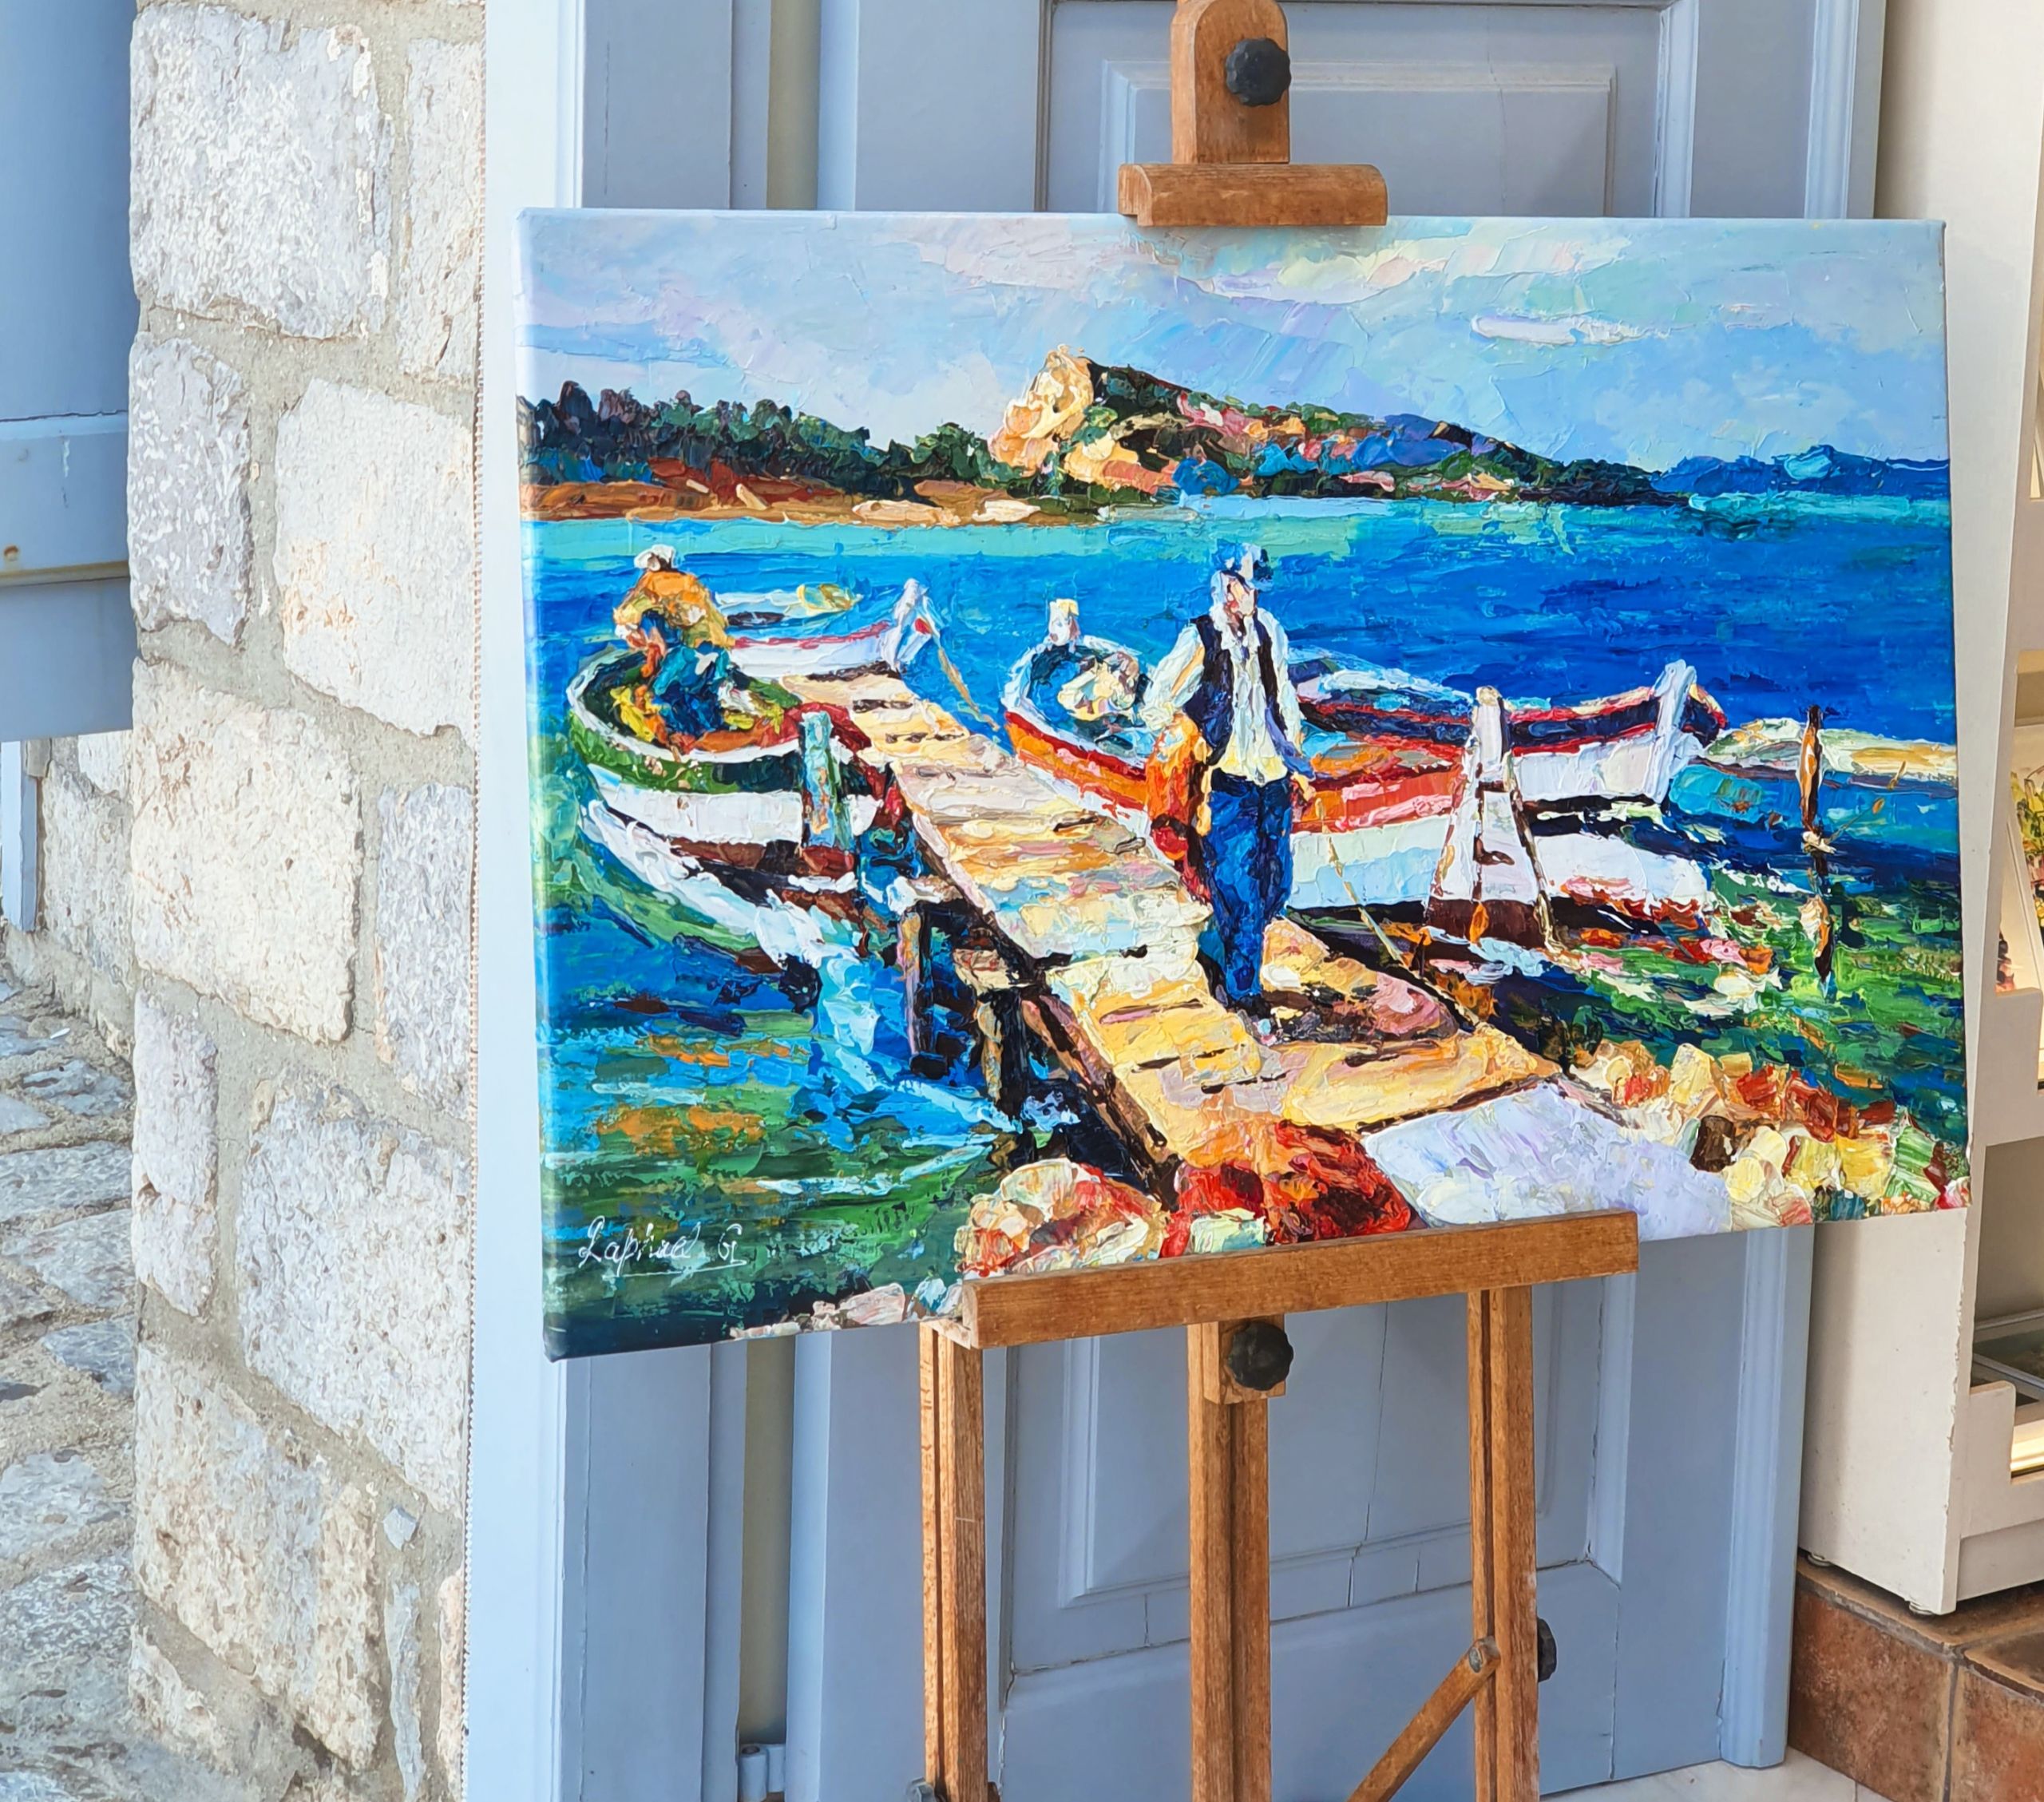 Ζωγραφιά σε σοκάκι του νησιού, © Μαριαλένα Μάλλιου